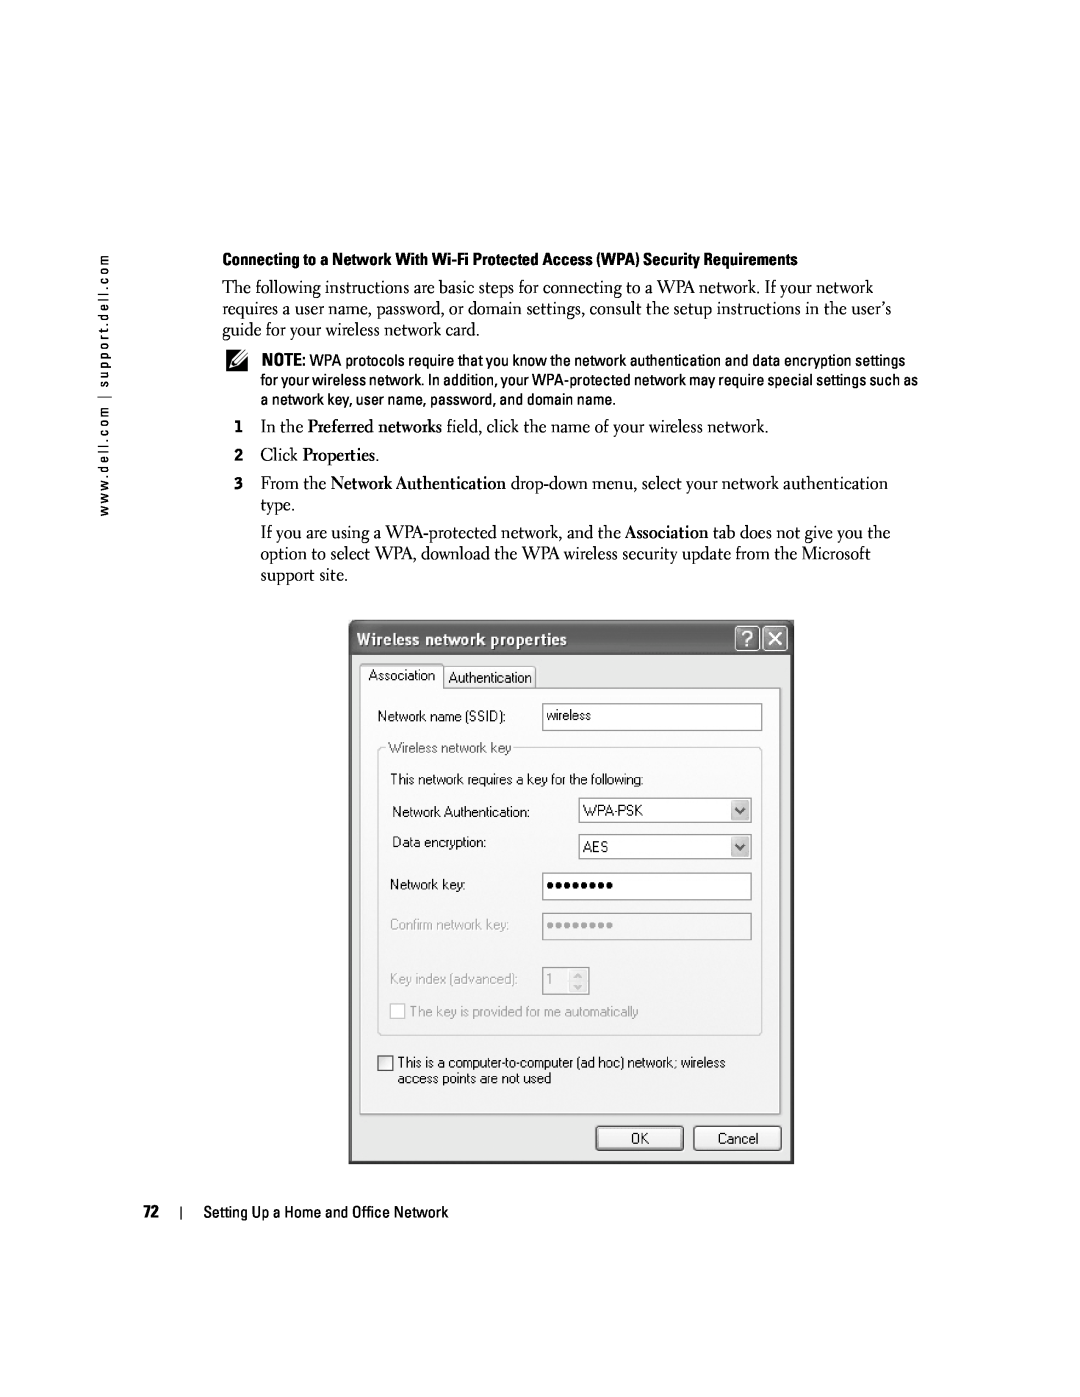 Dell PP09L owner manual Click Properties 